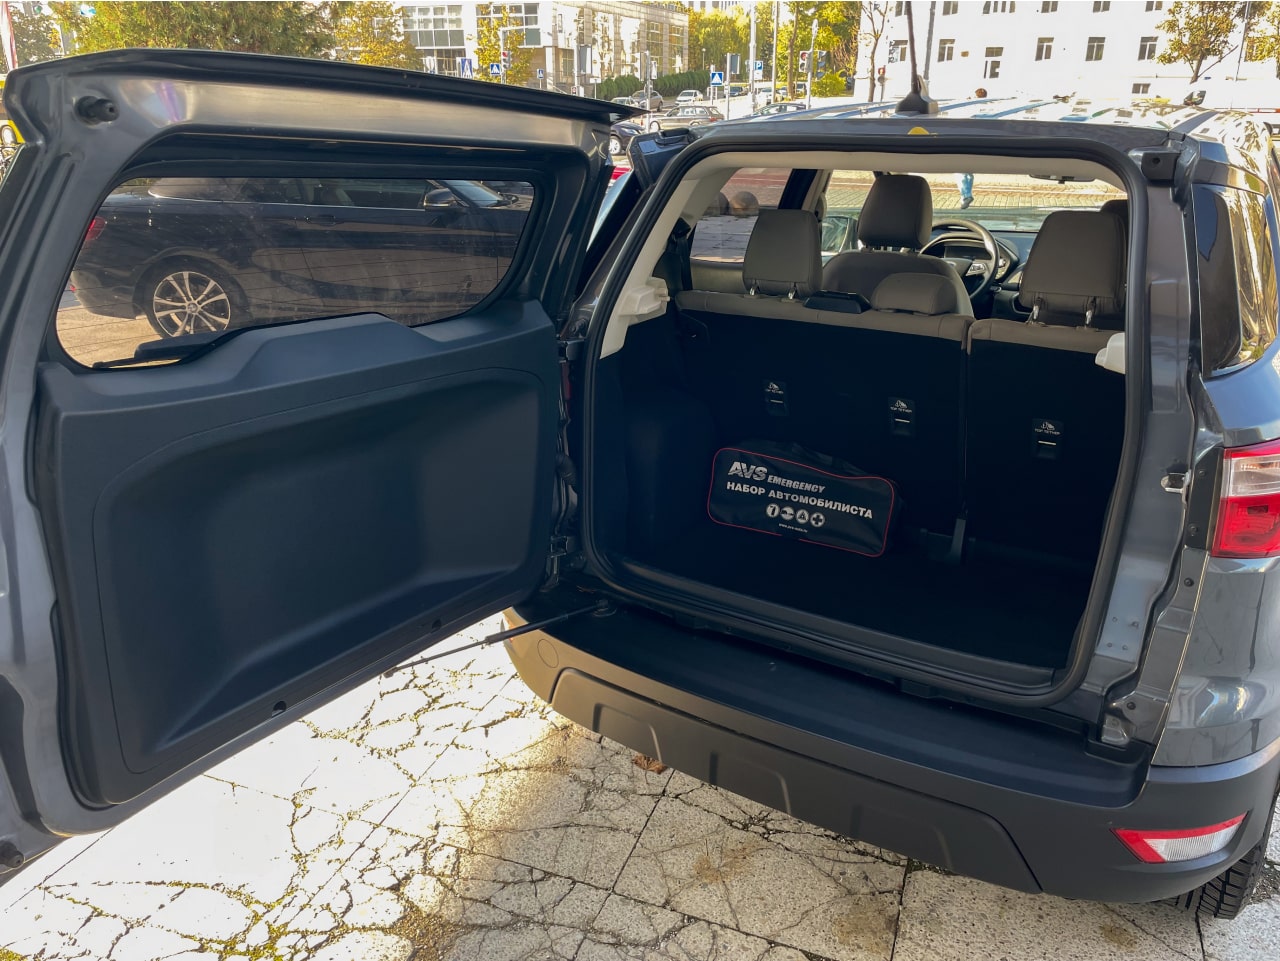 Аренда  Ford Ecosport  2 класса 2018-2022 года в городе Минск от 45 $/сутки,  двигатель: Бензин , объем 1.5 литров, КАСКО (Мультидрайв), без водителя, вид 5 - West Group